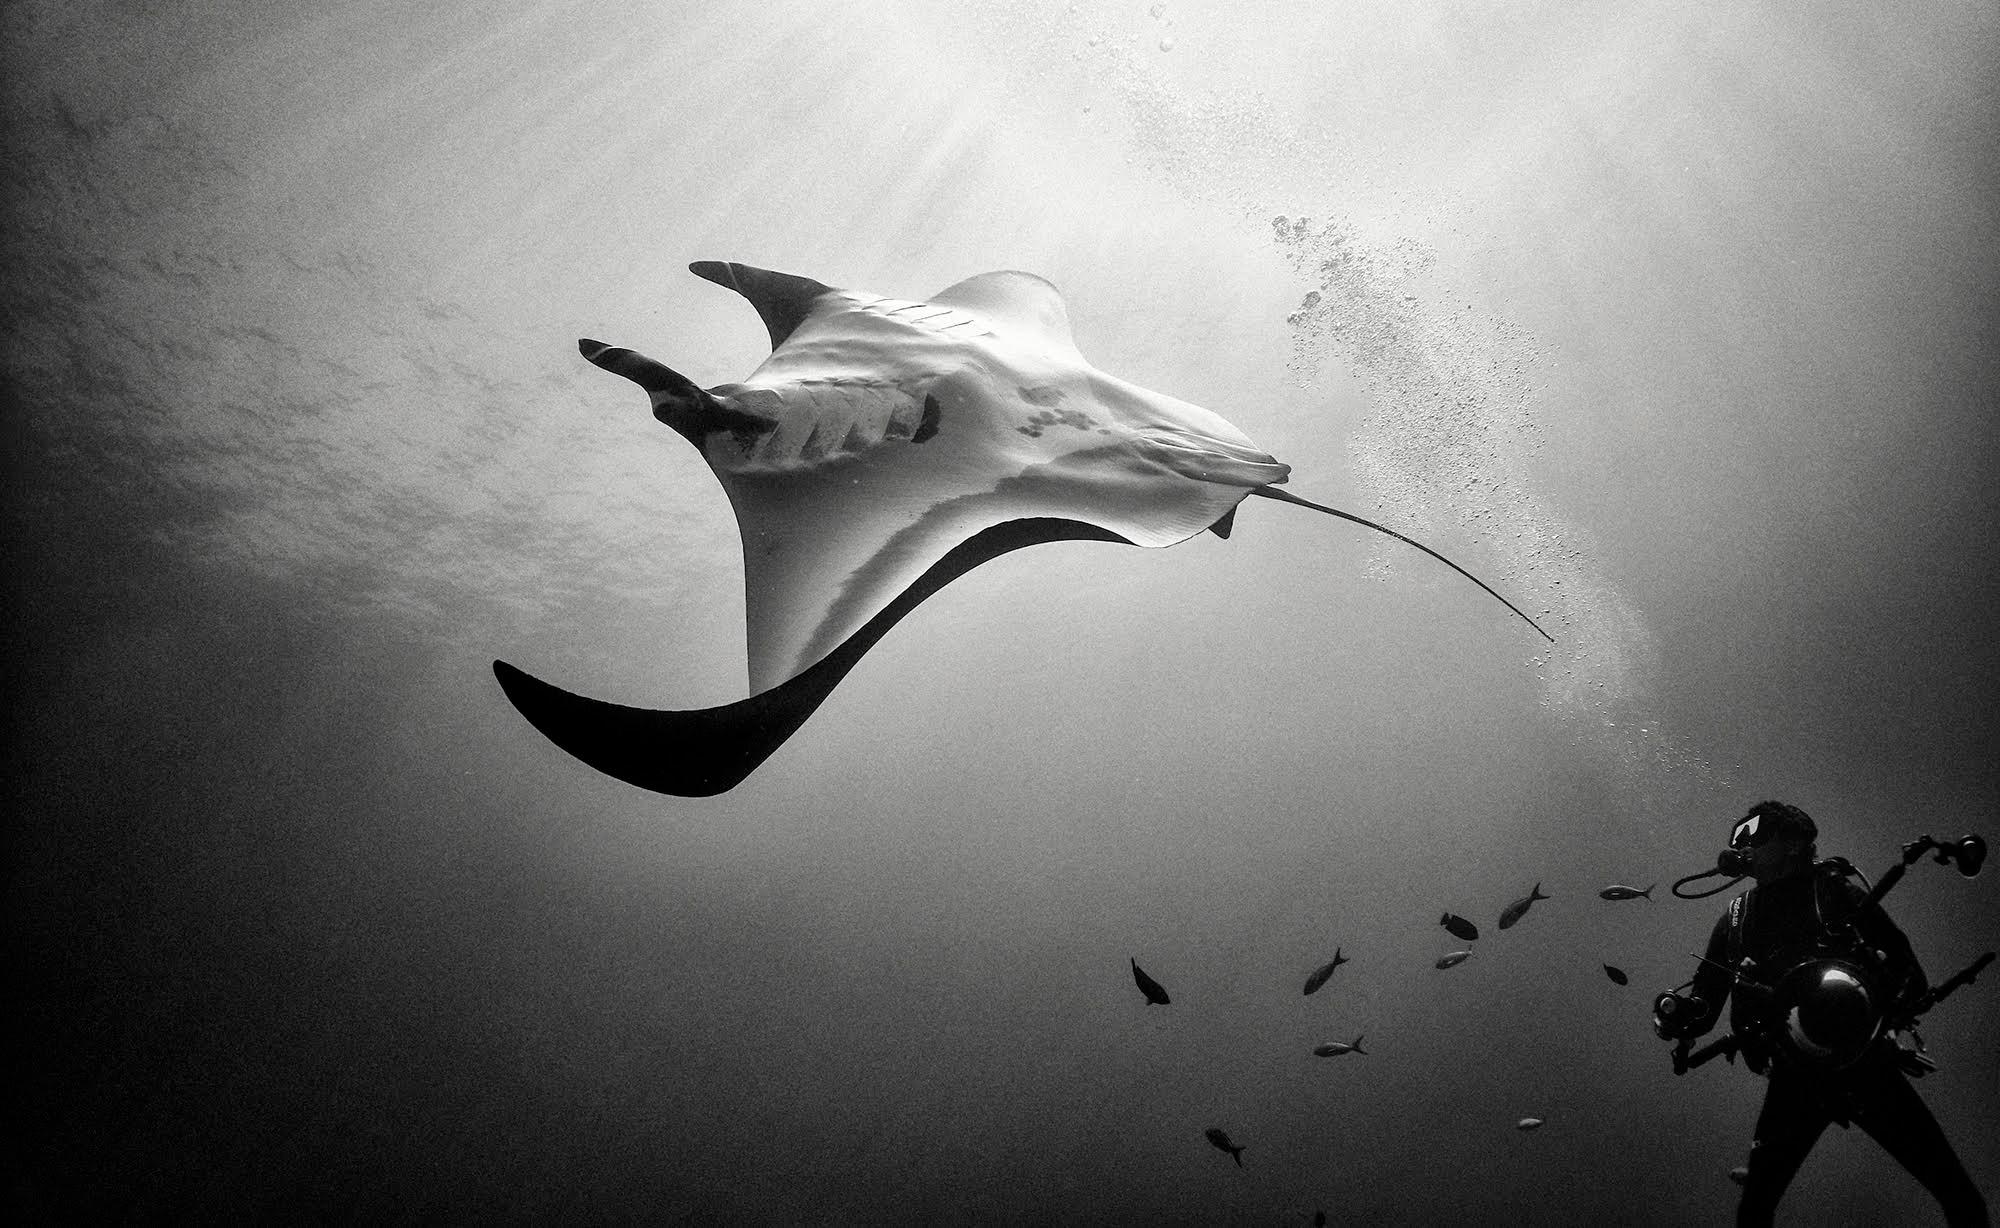 Espera que sus fotografías creen empatía hacia estas criaturas y su entorno, al tiempo que expresan el impacto que nuestras elecciones tienen en su trayectoria como especies del mar.